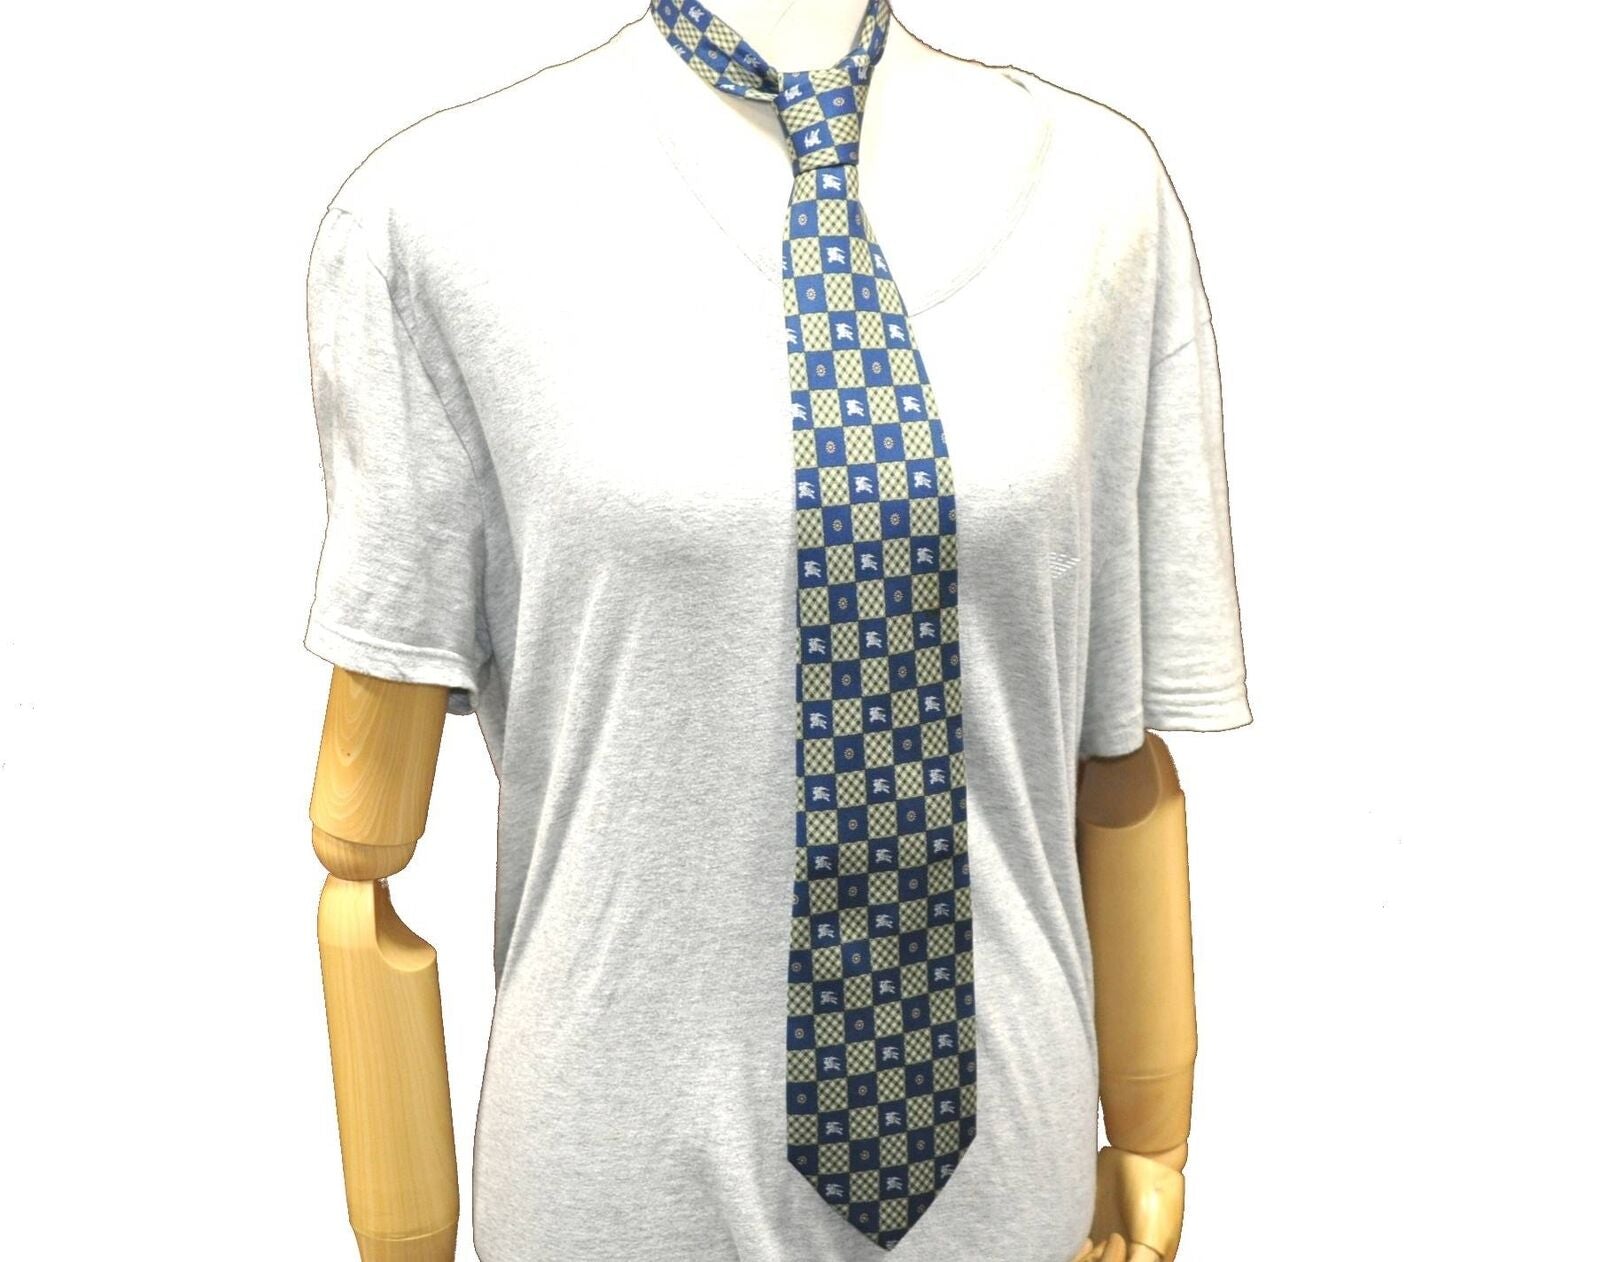 Authentic Burberrys Tie Necktie Check Pattern Silk Blue Green G7550